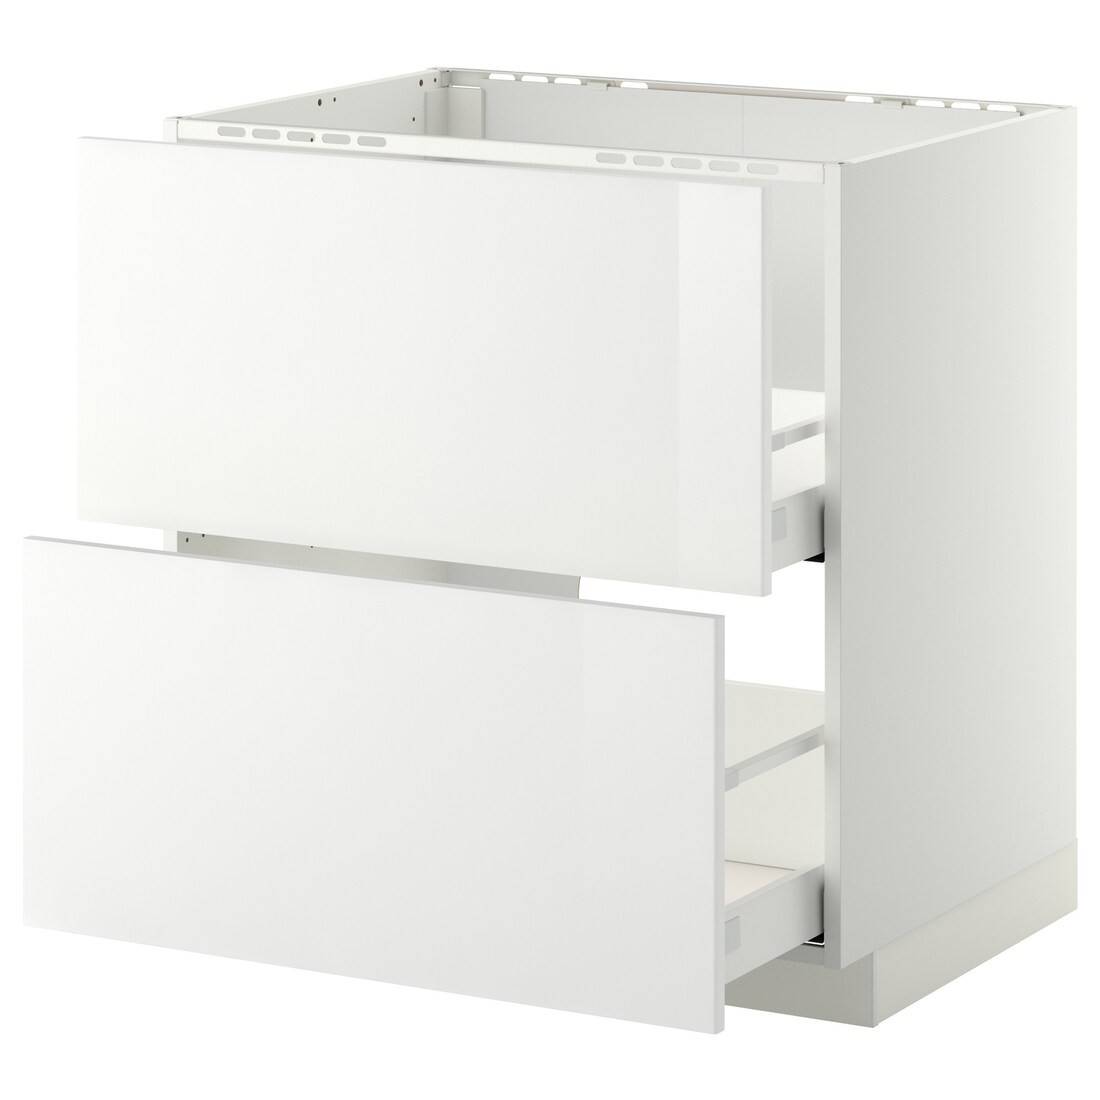 IKEA METOD МЕТОД / MAXIMERA МАКСИМЕРА Напольный шкаф под мойку с ящиками, белый / Ringhult белый, 80x60 см 69920242 699.202.42